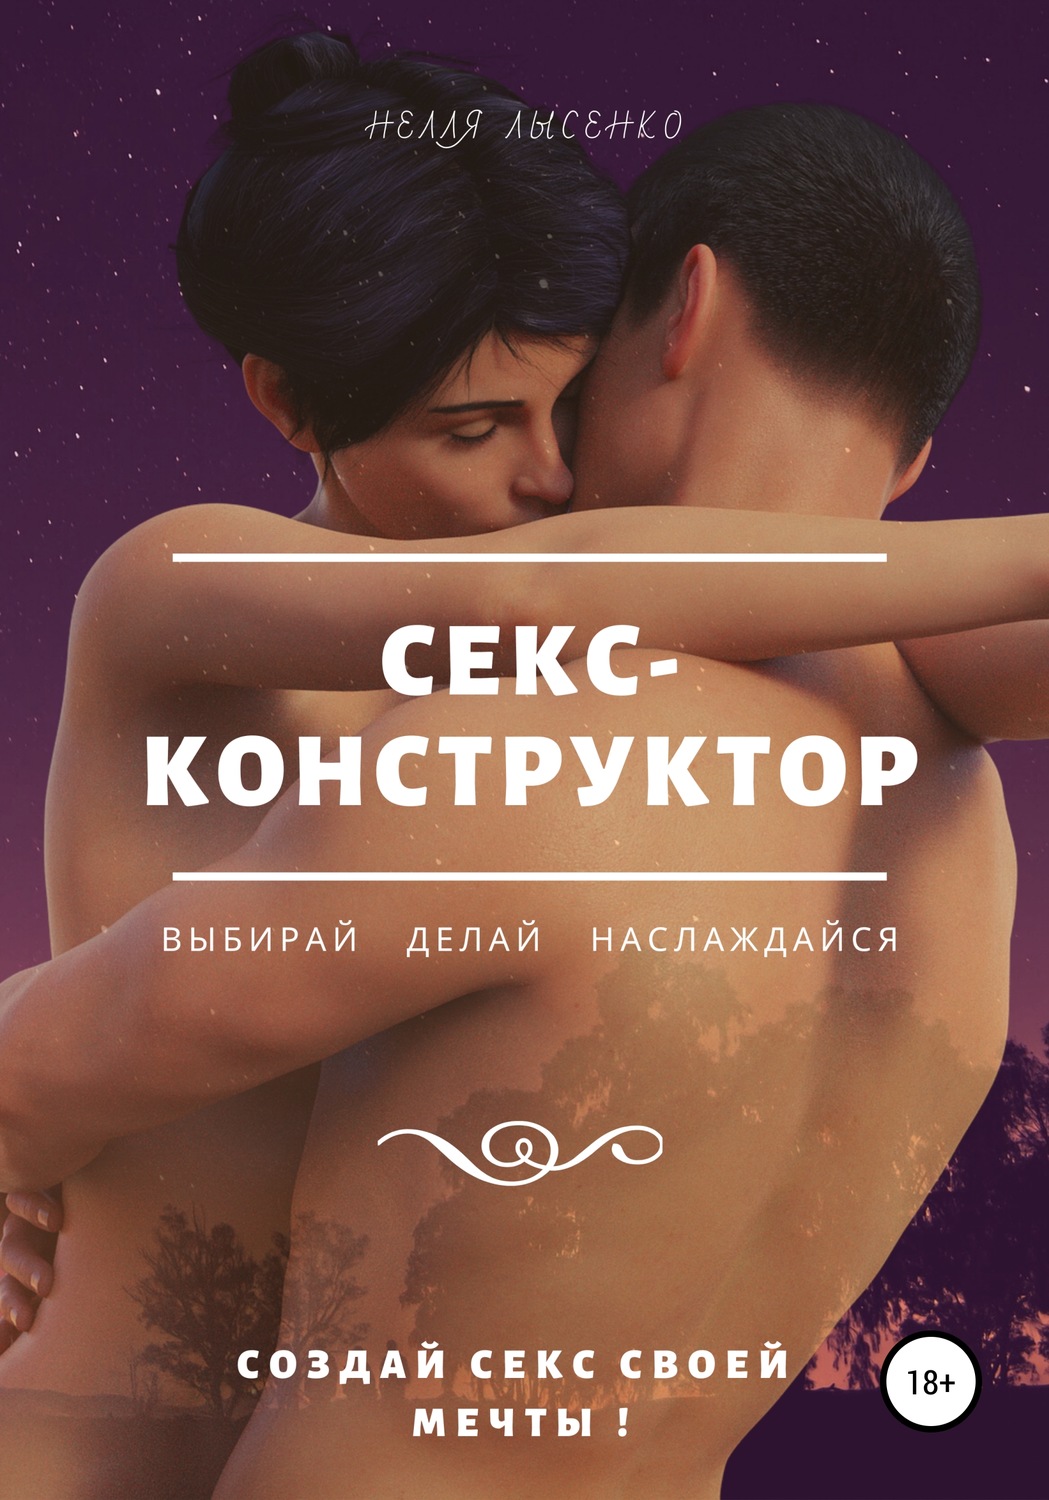 Порно игра Создай свою девушку :: kingplayclub.ru